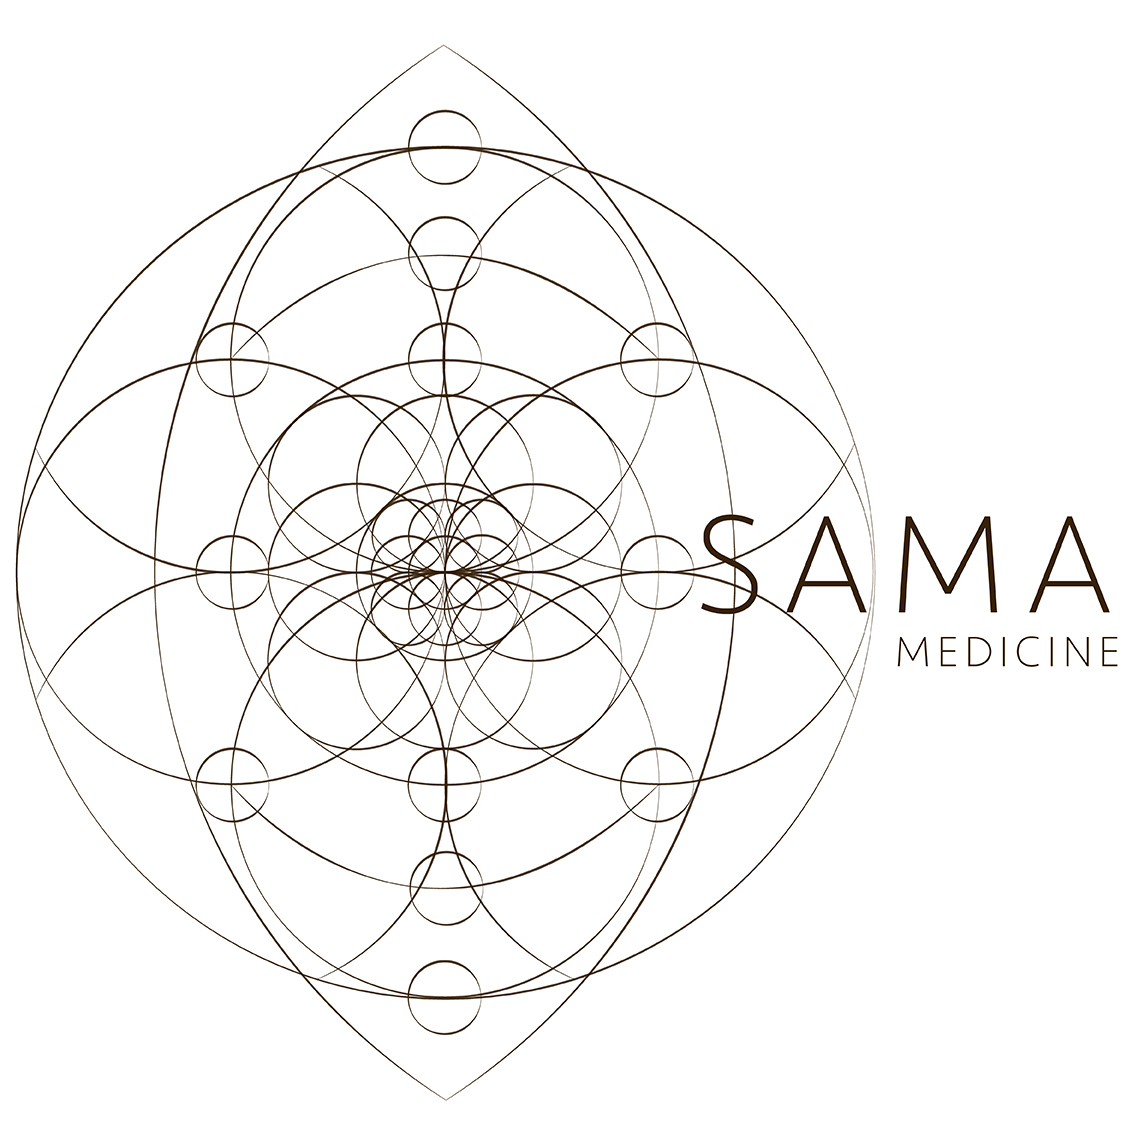 SAMA Medicine